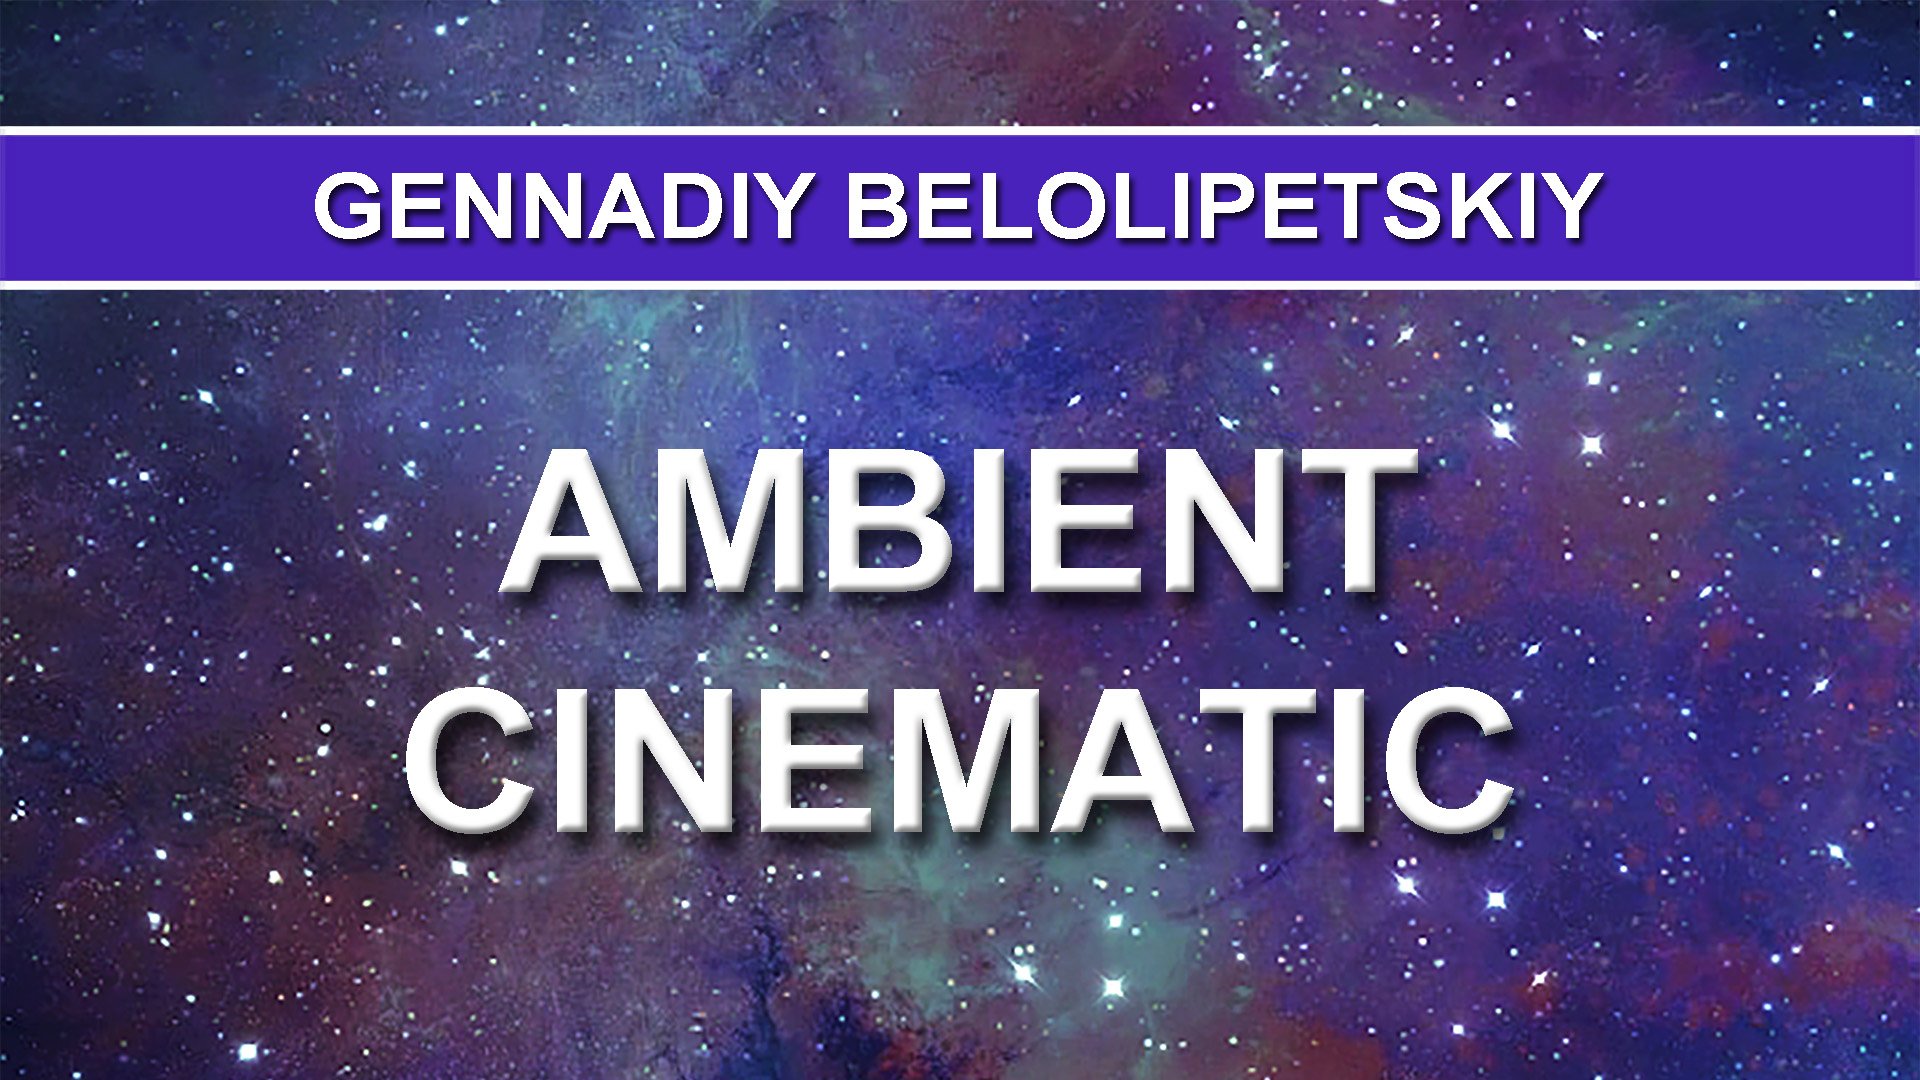 Gennadiy Belolipetskiy - Ambient Cinematic (Ambient music)